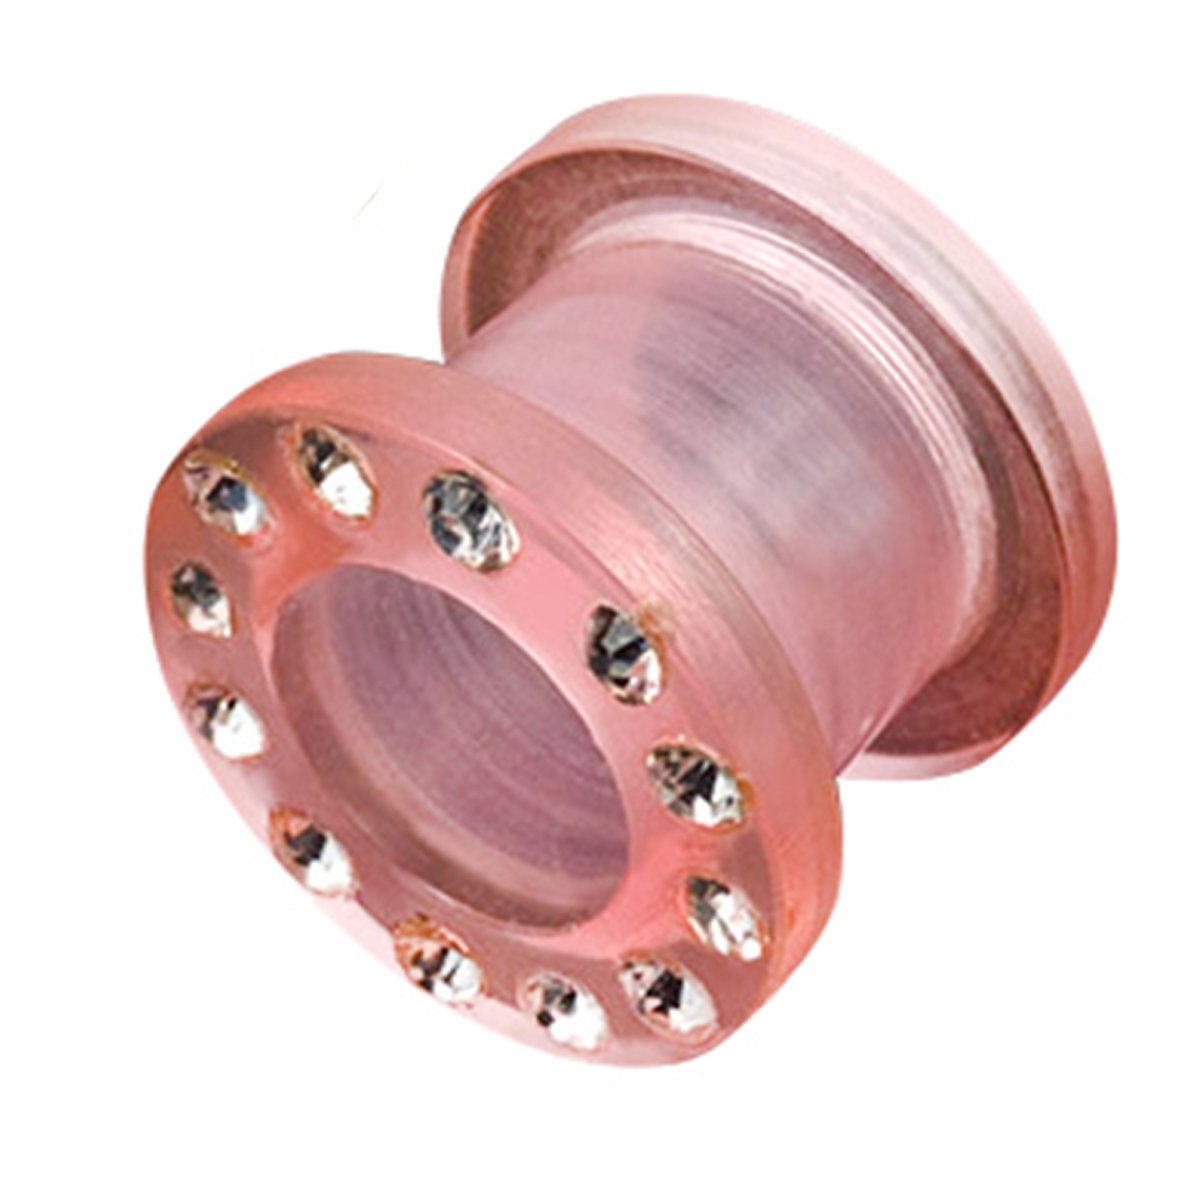 Taffstyle Plug Piercing Kristall, Kunststoff Plug Lobe Rosa Flesh Dehner Lobes Schraub Dehner Tunnel Lobes Ohrpiercing Ear Lobe Ear